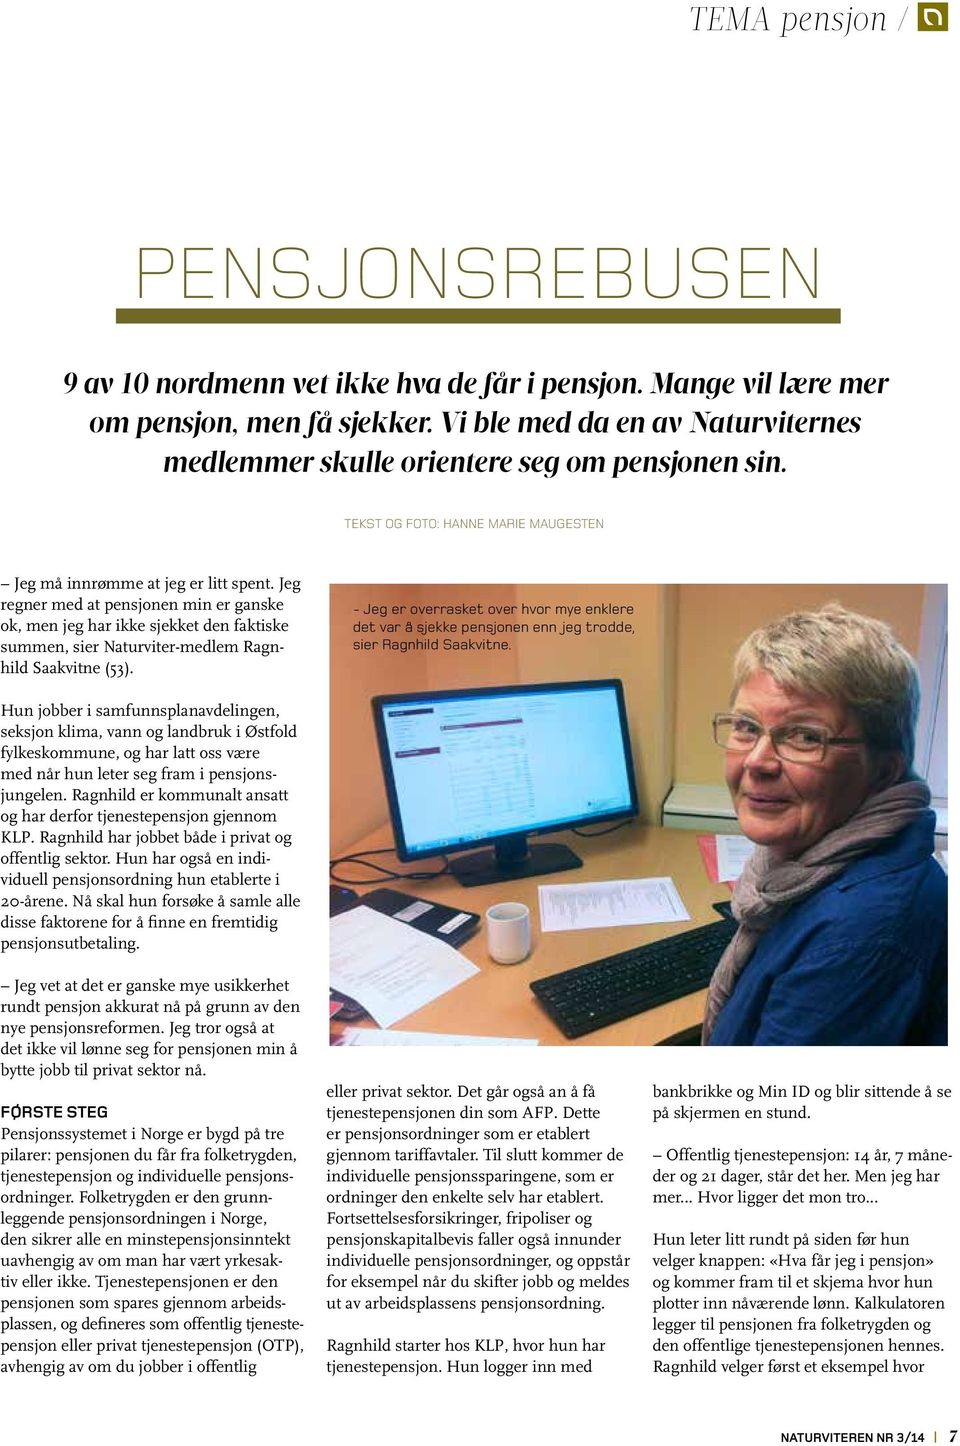 Jeg regner med at pensjonen min er ganske ok, men jeg har ikke sjekket den faktiske summen, sier Naturviter-medlem Ragnhild Saakvitne (53).